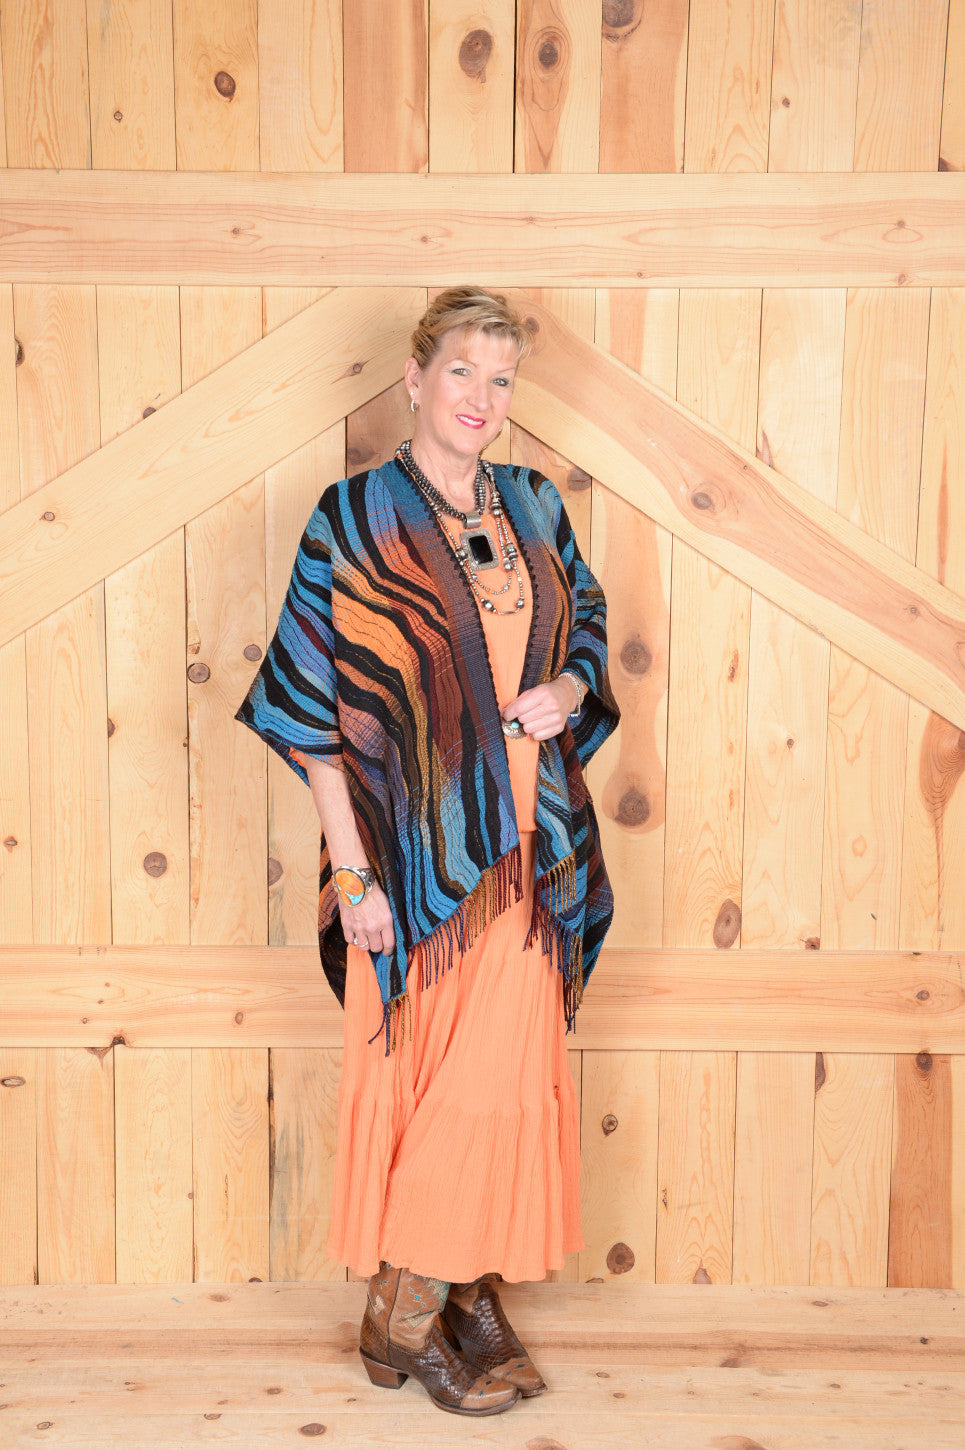 Rhonda Stark Italian Acrylic Knit Shawl Turquoise Wave Pattern with Fringe, Front